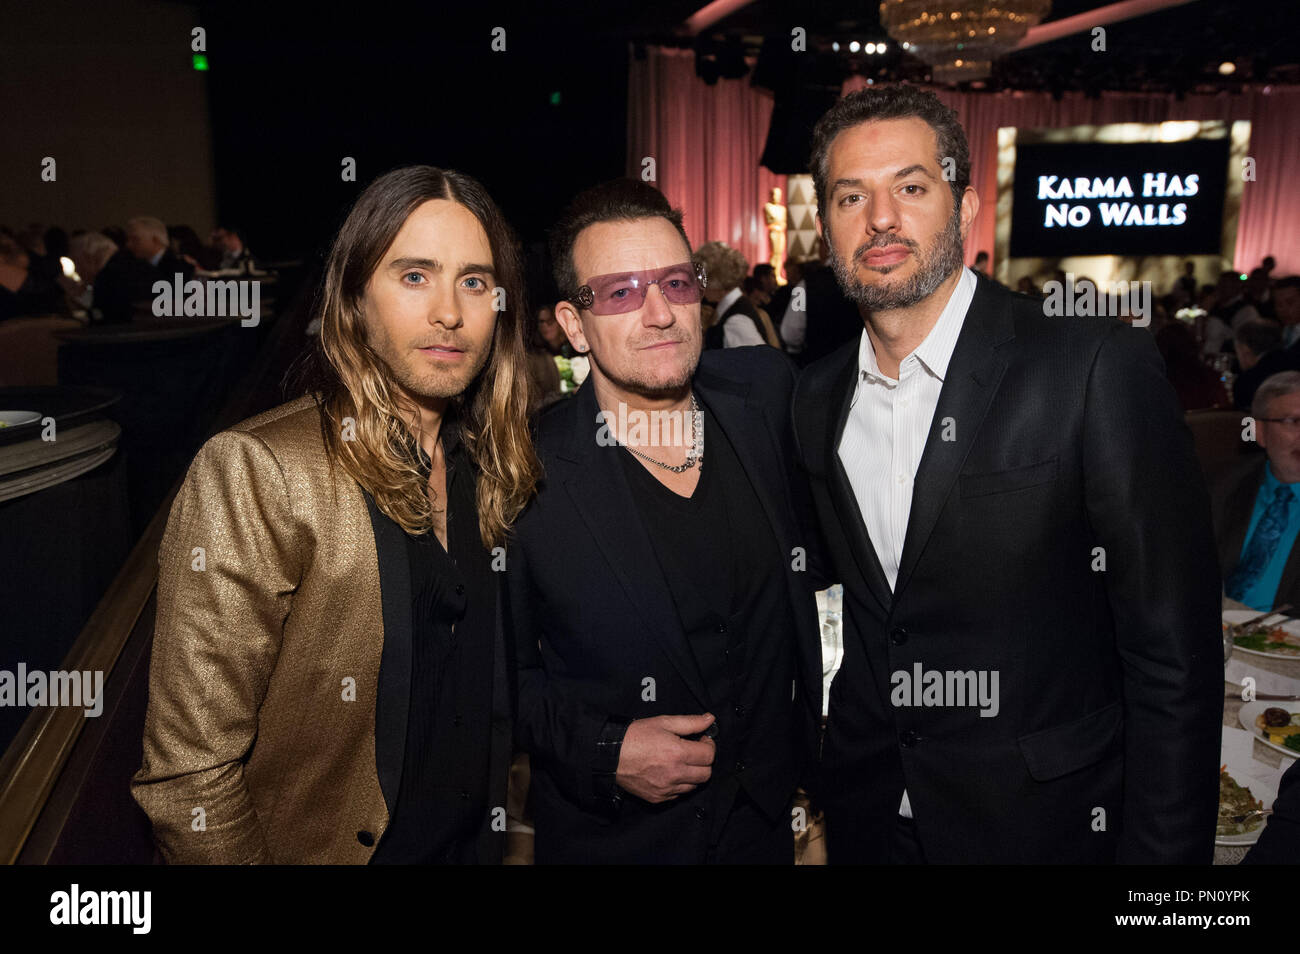 L'acteur Jared Leto (à gauche), chanter/compositeur Bono (centre) et producteur Guy Oseary à l'Oscar® nominés Déjeuner à Beverly Hills Lundi, 10 février 2014. Référence de fichier #  32256_003 pour un usage éditorial uniquement - Tous droits réservés Banque D'Images